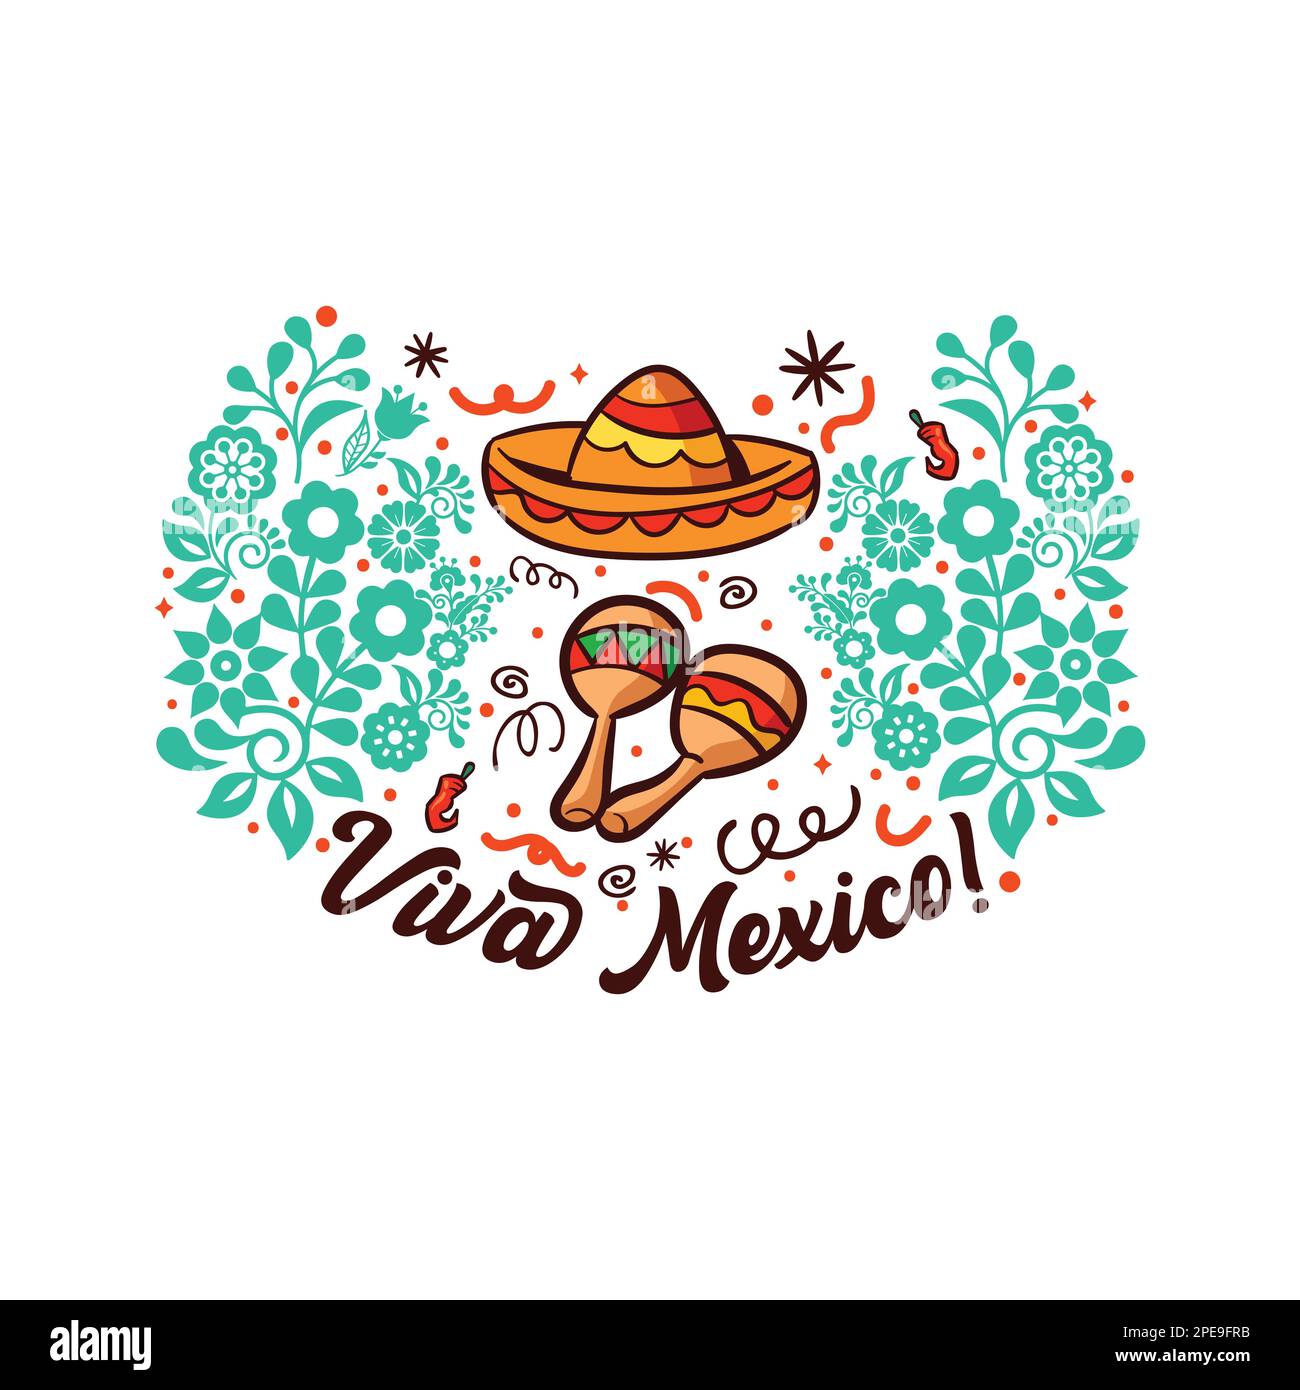 5 mai, vacances fédérales au Mexique, Viva Mexique affiche, viva mexique lettrage, citation carte de vœux pour les vacances mexicaines Illustration de Vecteur